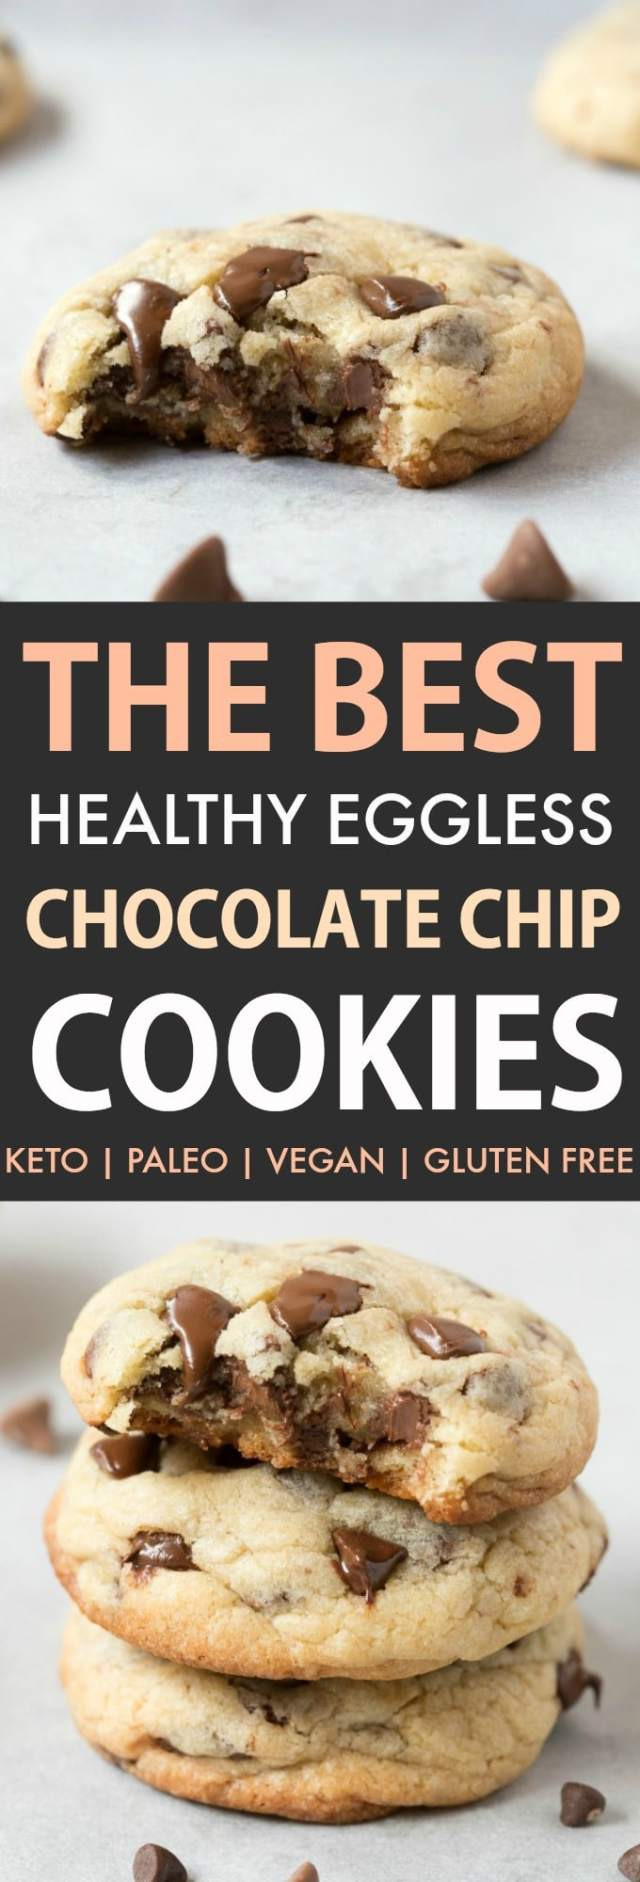 Healthy Keto Cookies
 Best Healthy Chocolate Chip Cookies Paleo Vegan Keto